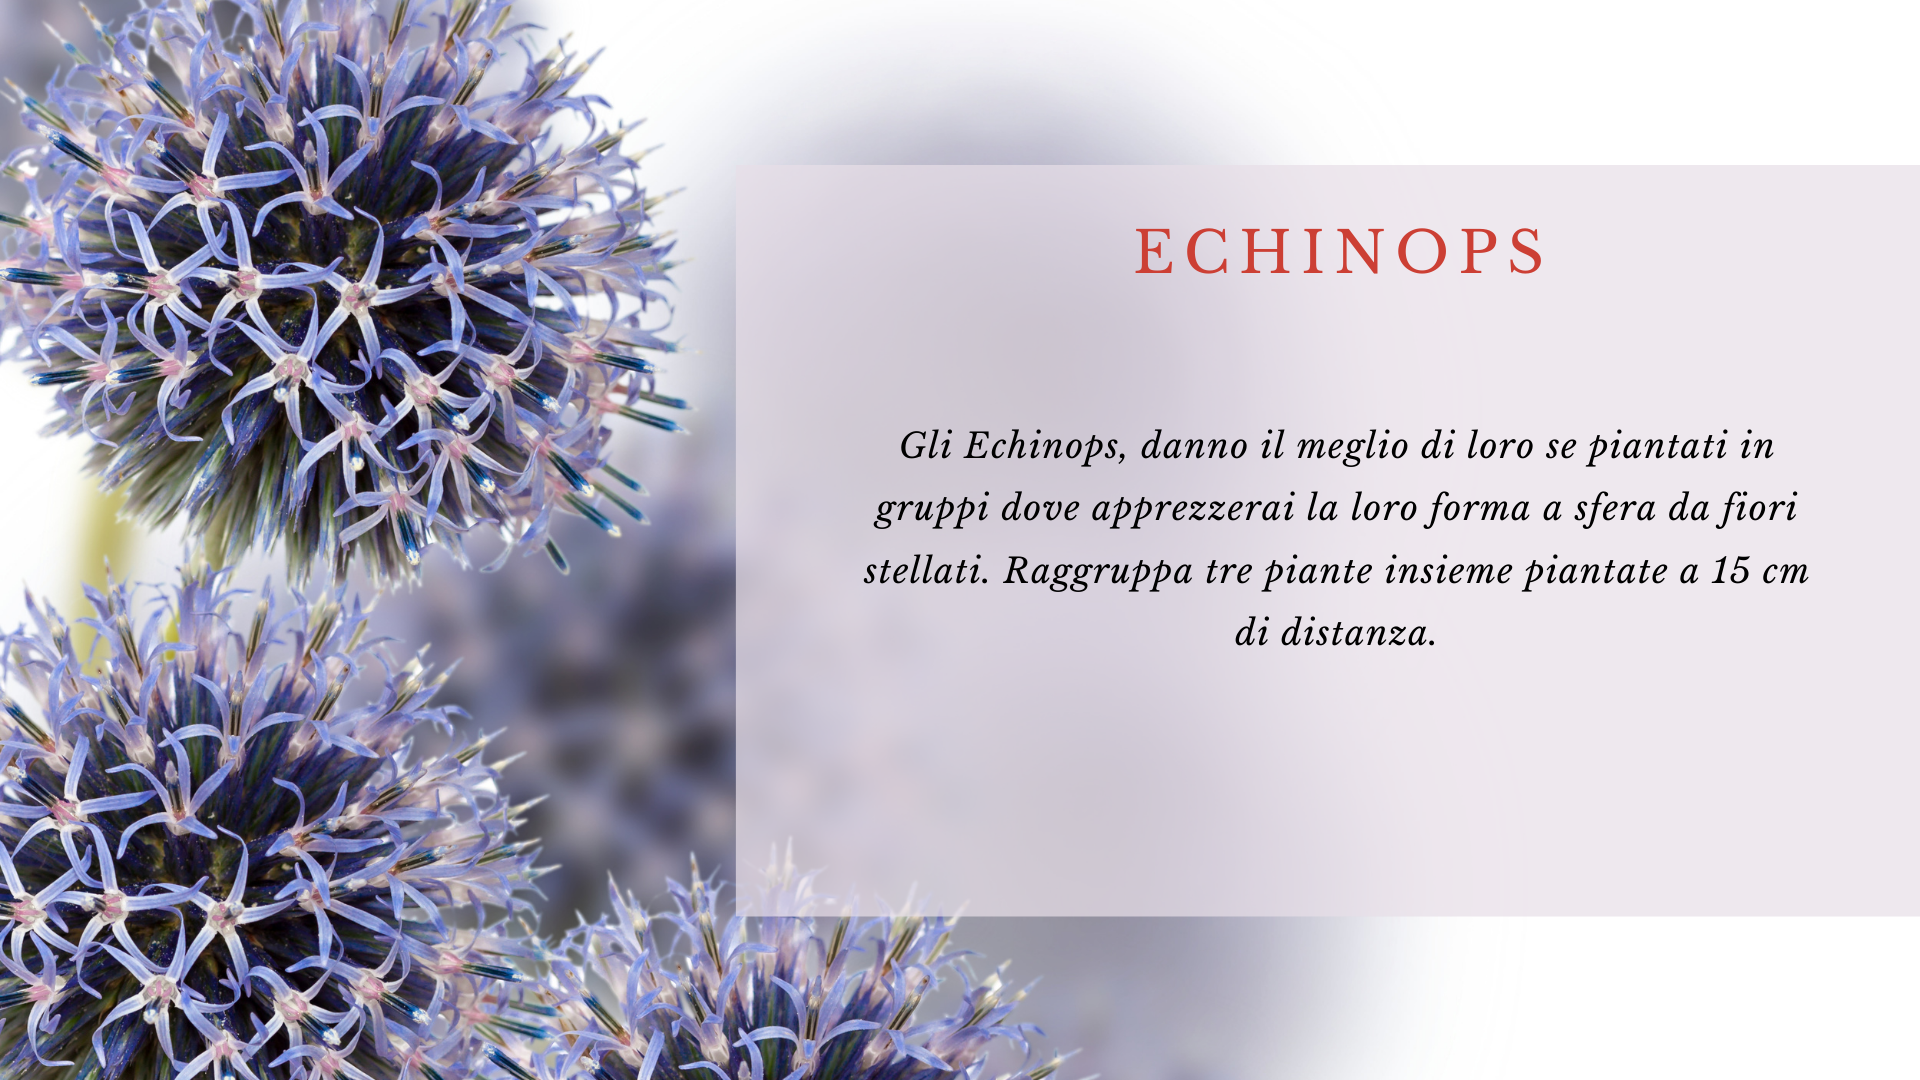 Echinops